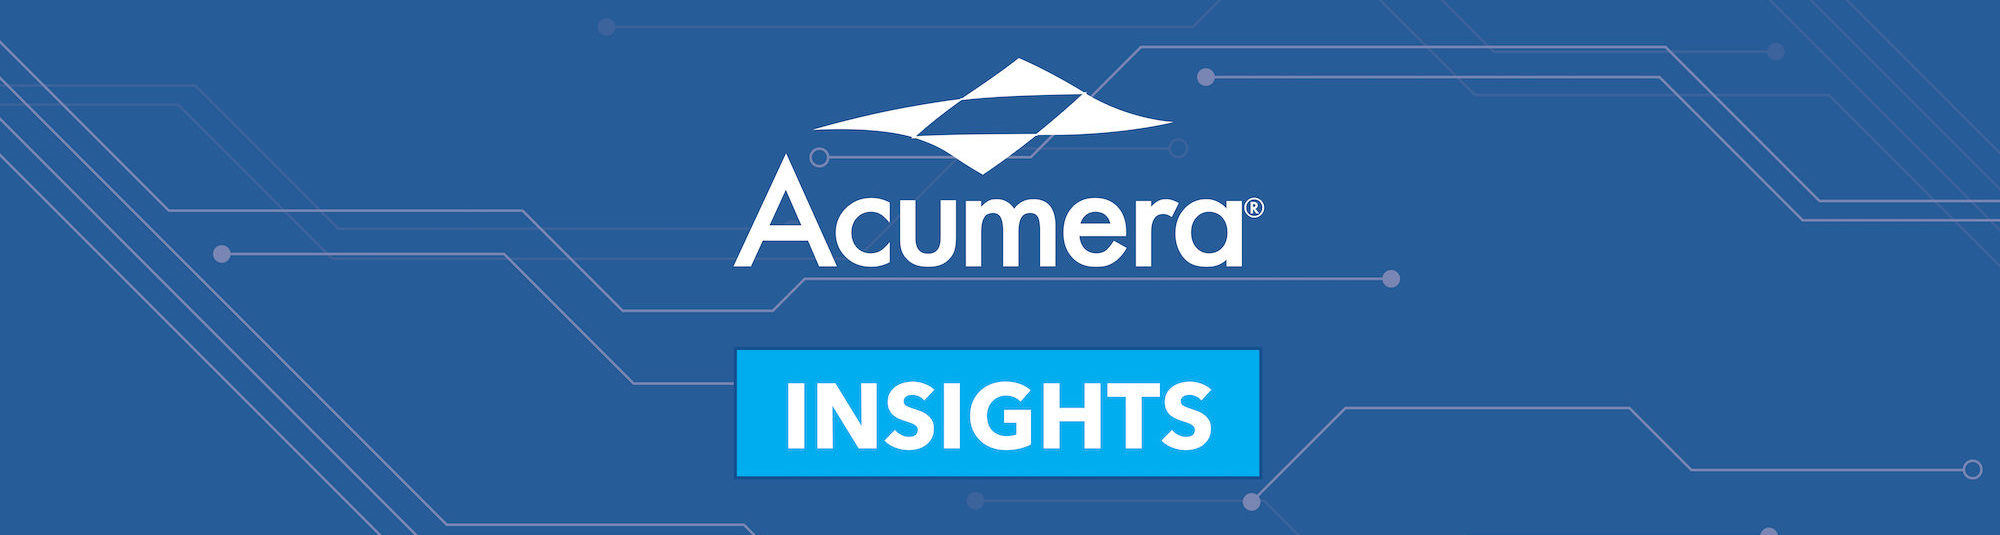 Acumera Insights Image